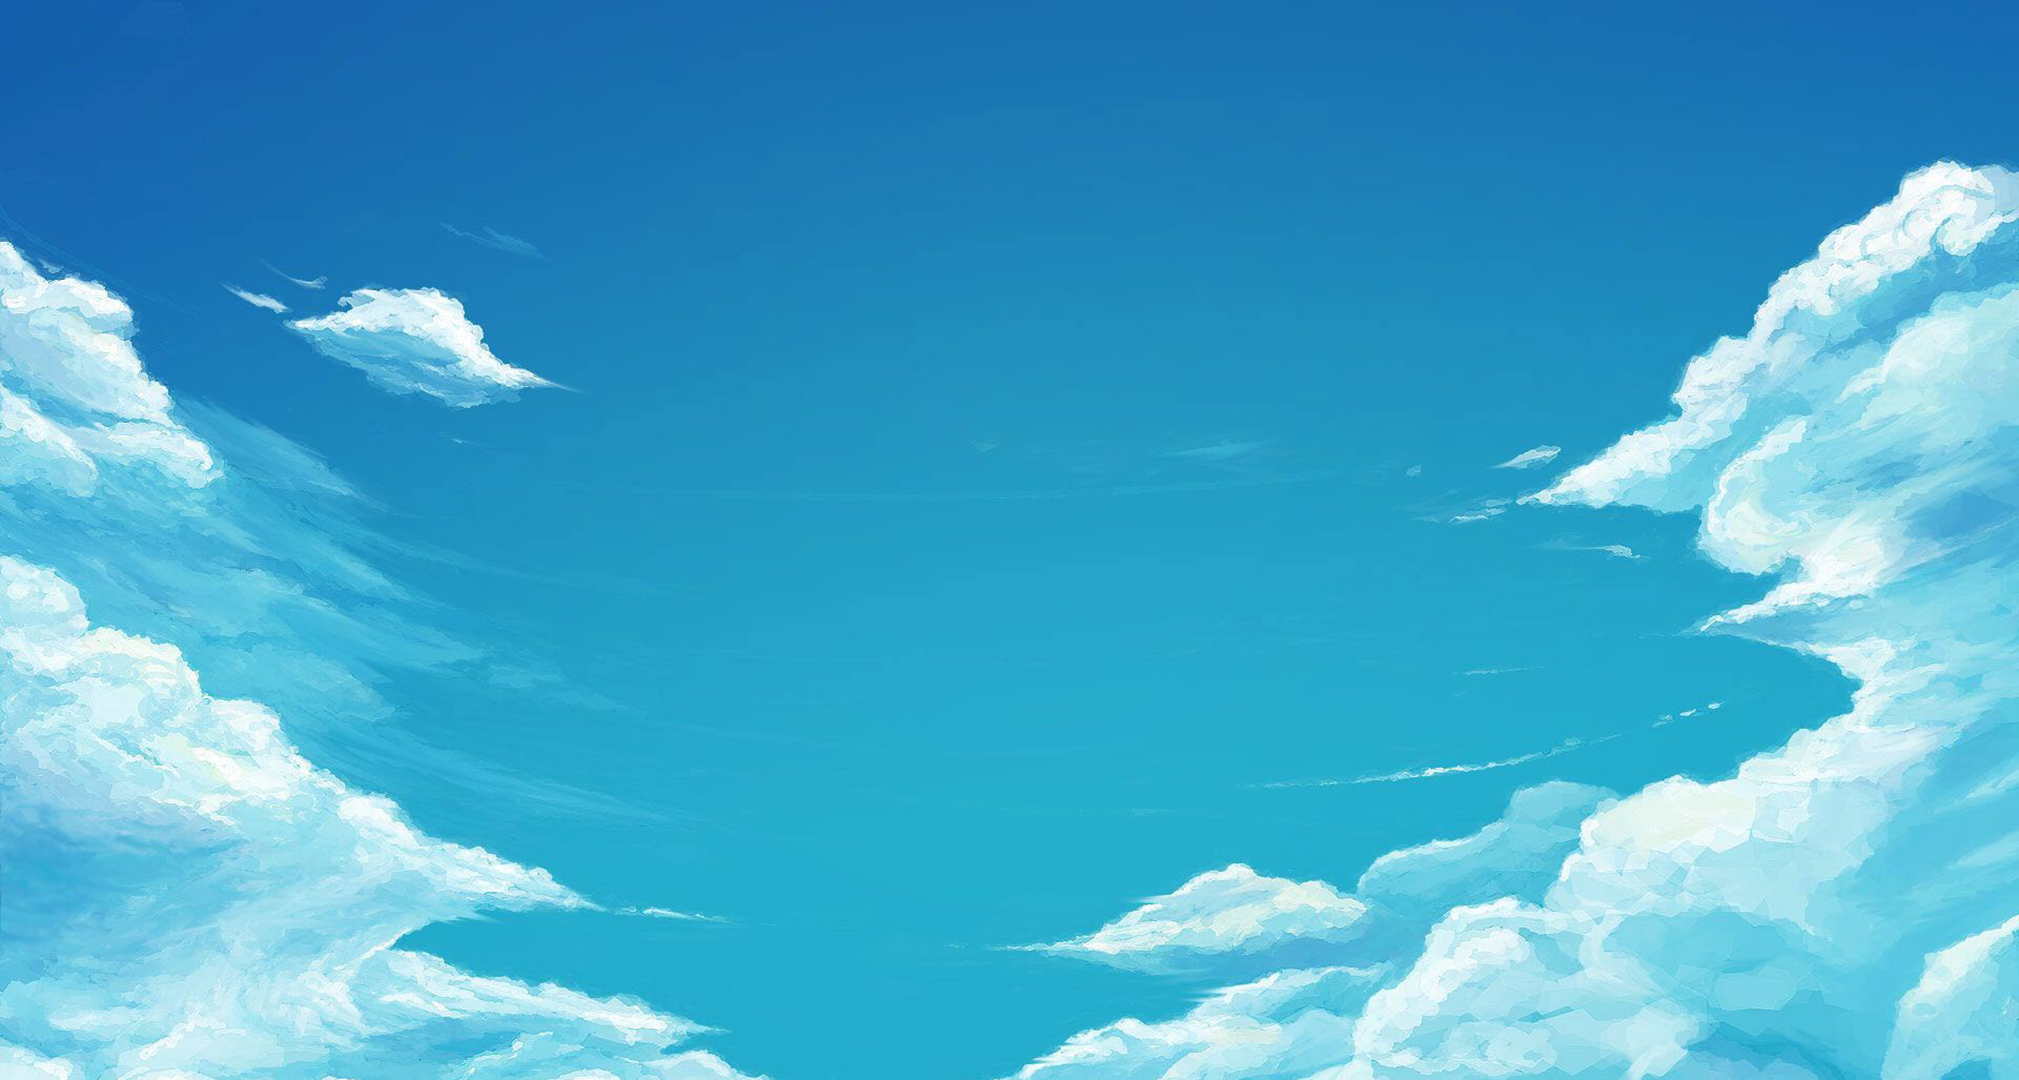 Anime Vẽ Tay Bầu Trời Mây Bay Cá Cầu Vồng Hình Nền điện Thoại Di động  UI  PSD Tải xuống miễn phí  Pikbest